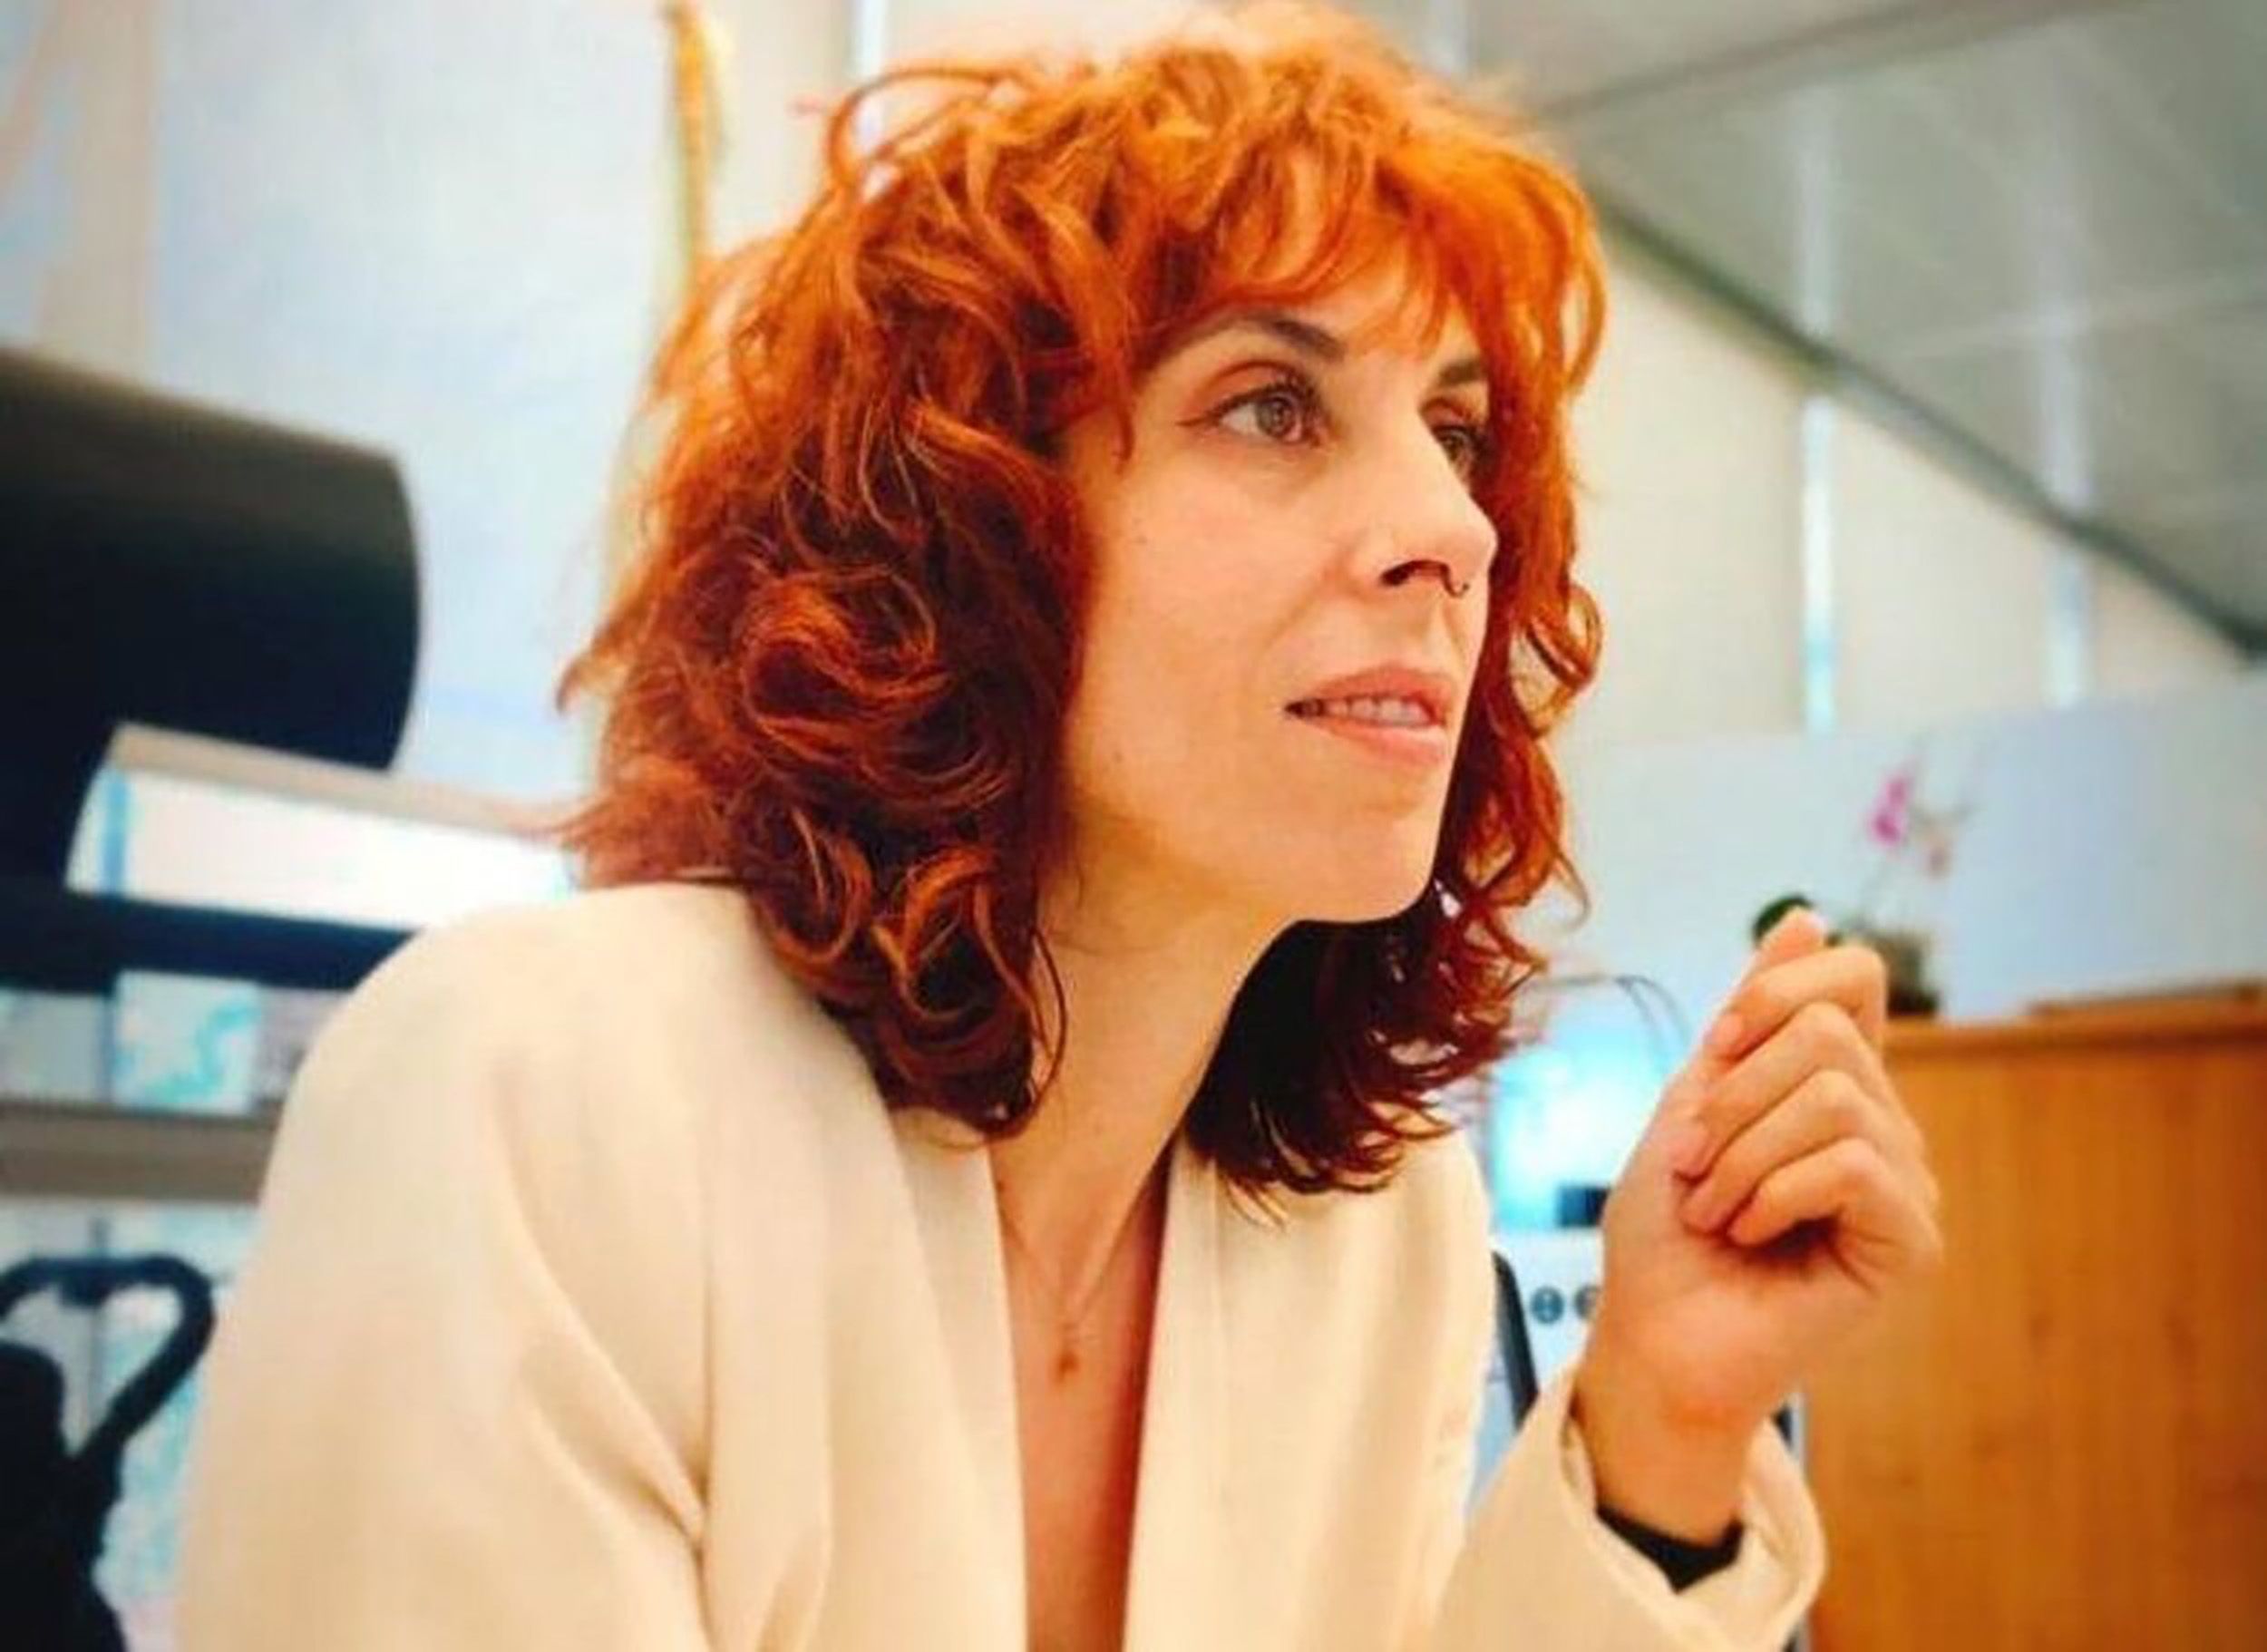 Irene Gavidia, candidata a directora del Imserso por un día: "Han boicoteado mi nombramiento"